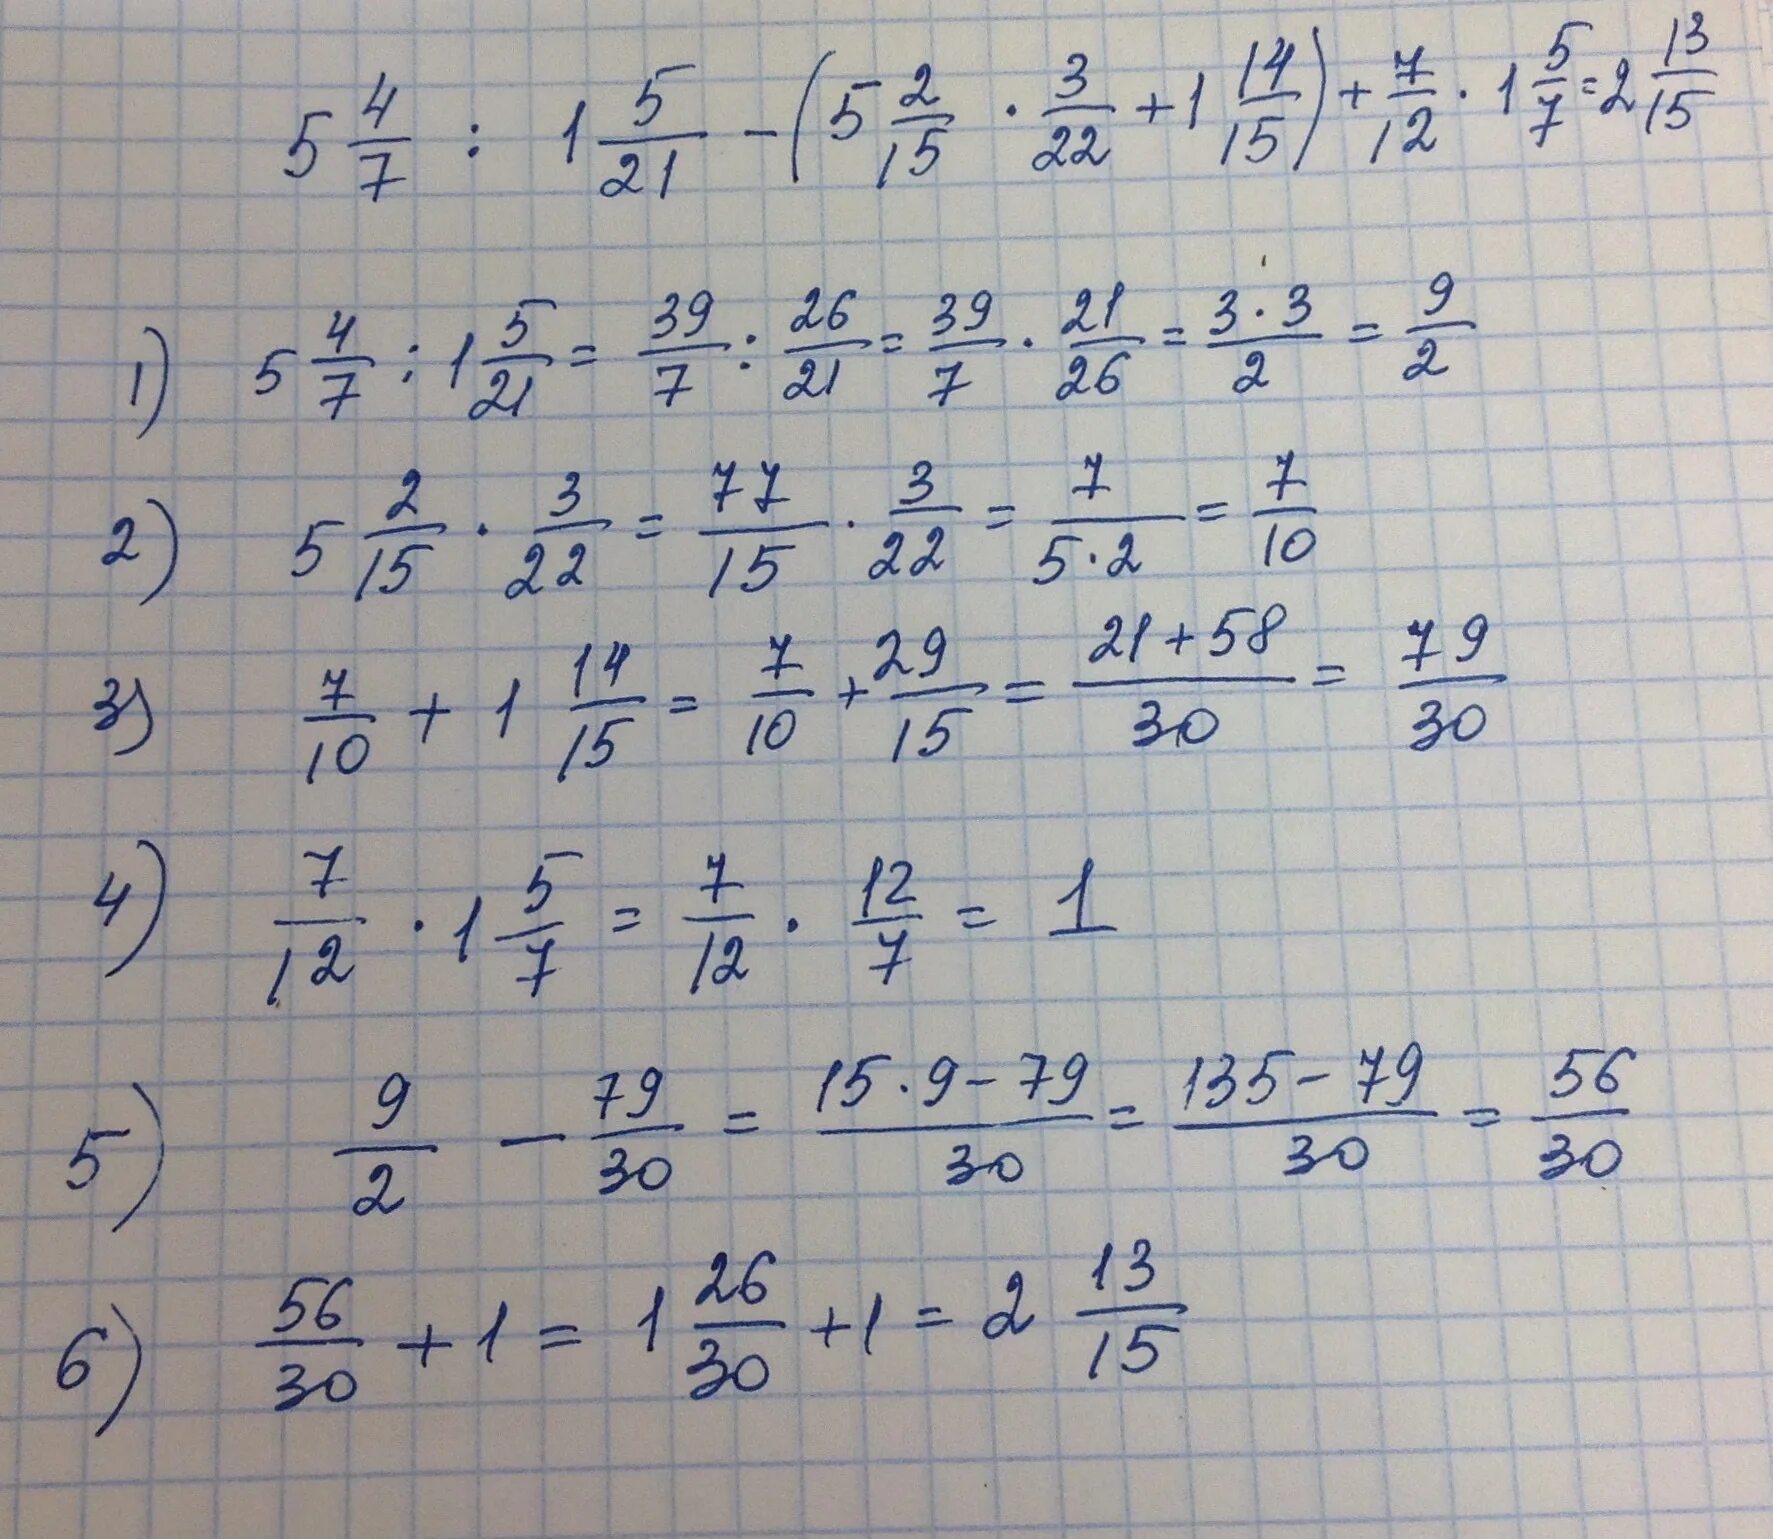 21 7 3 5 решение. НВКУ 49-12-7. 5 × 12/15 +(5,6-11,2):1, 6/5. 5 1/3×2 1/4÷7 1/5 ответ. (5/6+2 3/4):4 7/9*2 2/3-1 2/3.